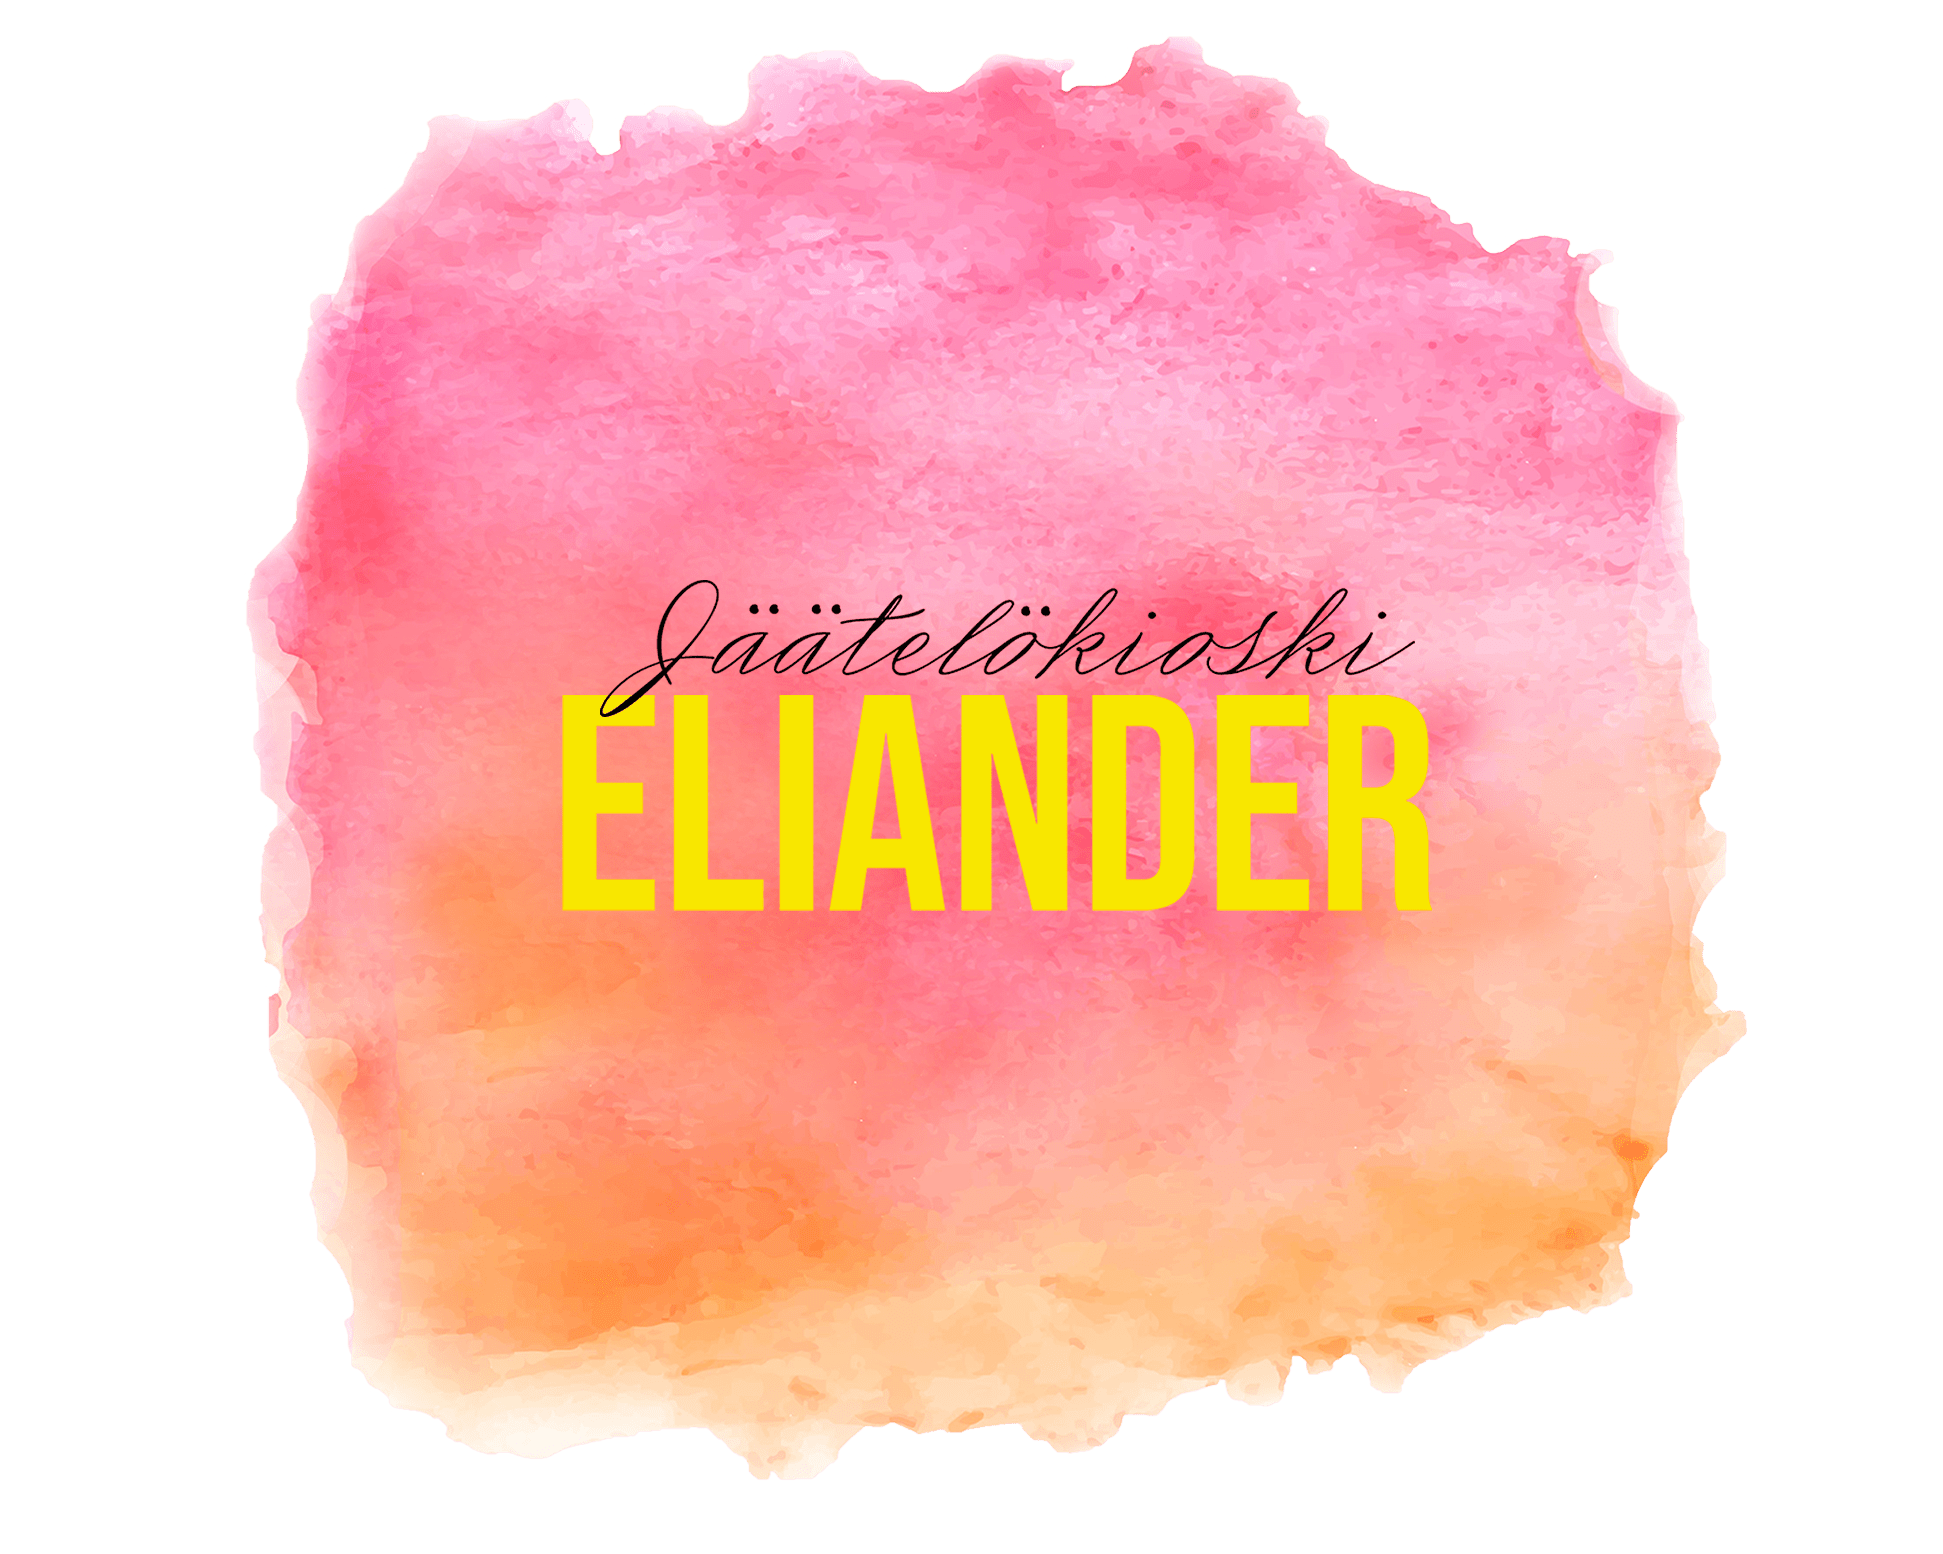 Jäätelökioski Eliander